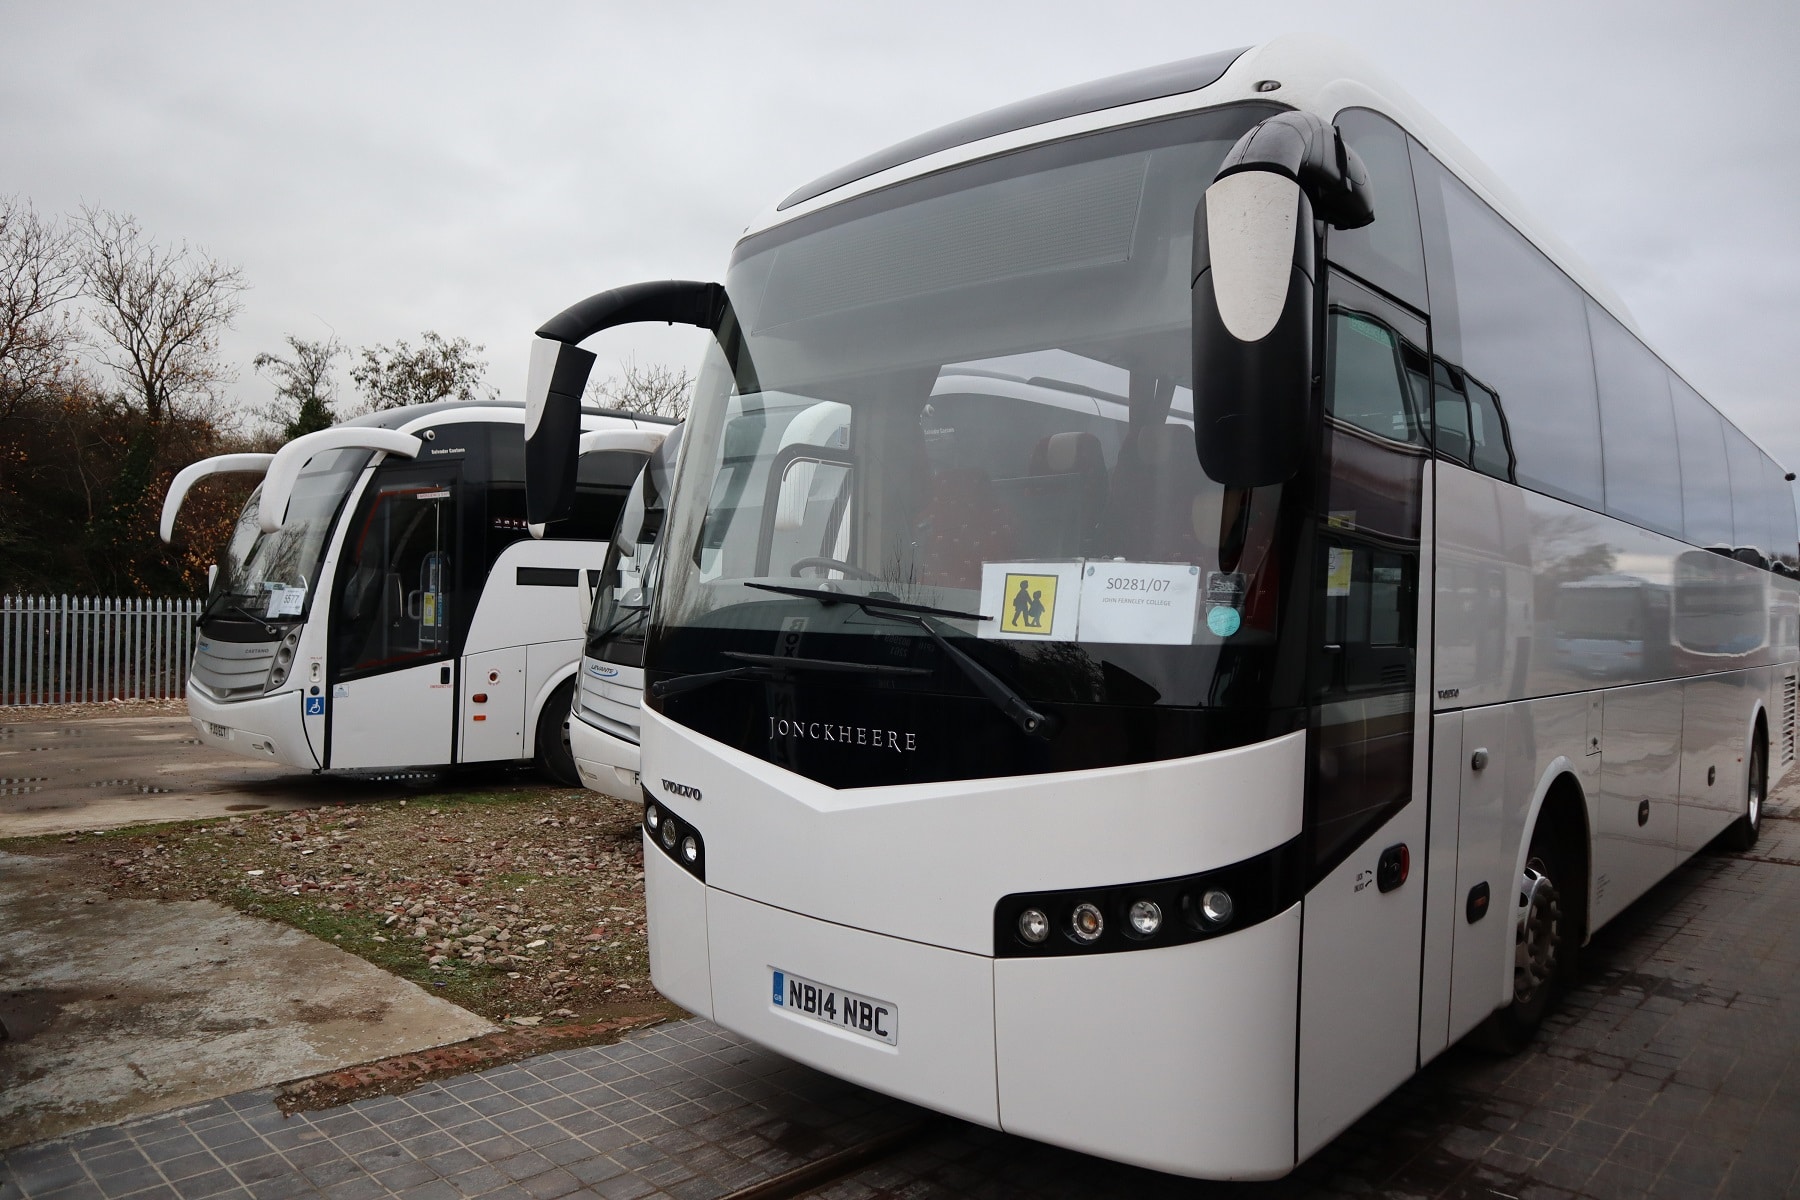 G&G Travel of Melton Mowbray coach fleet